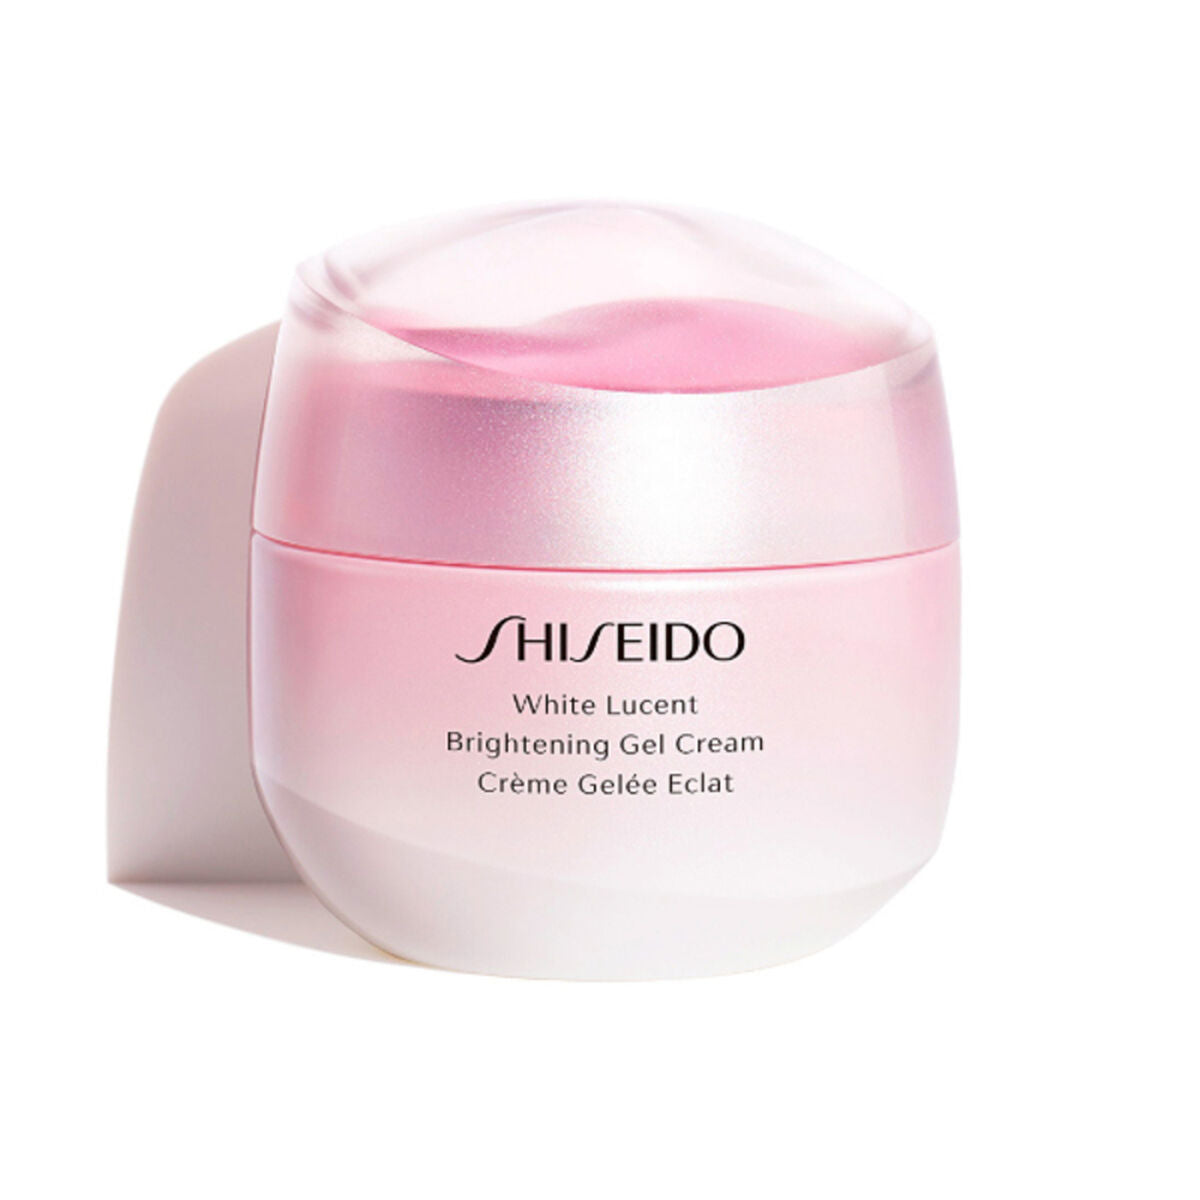 Highlighting Cream White Lucent Shiseido 50 ml